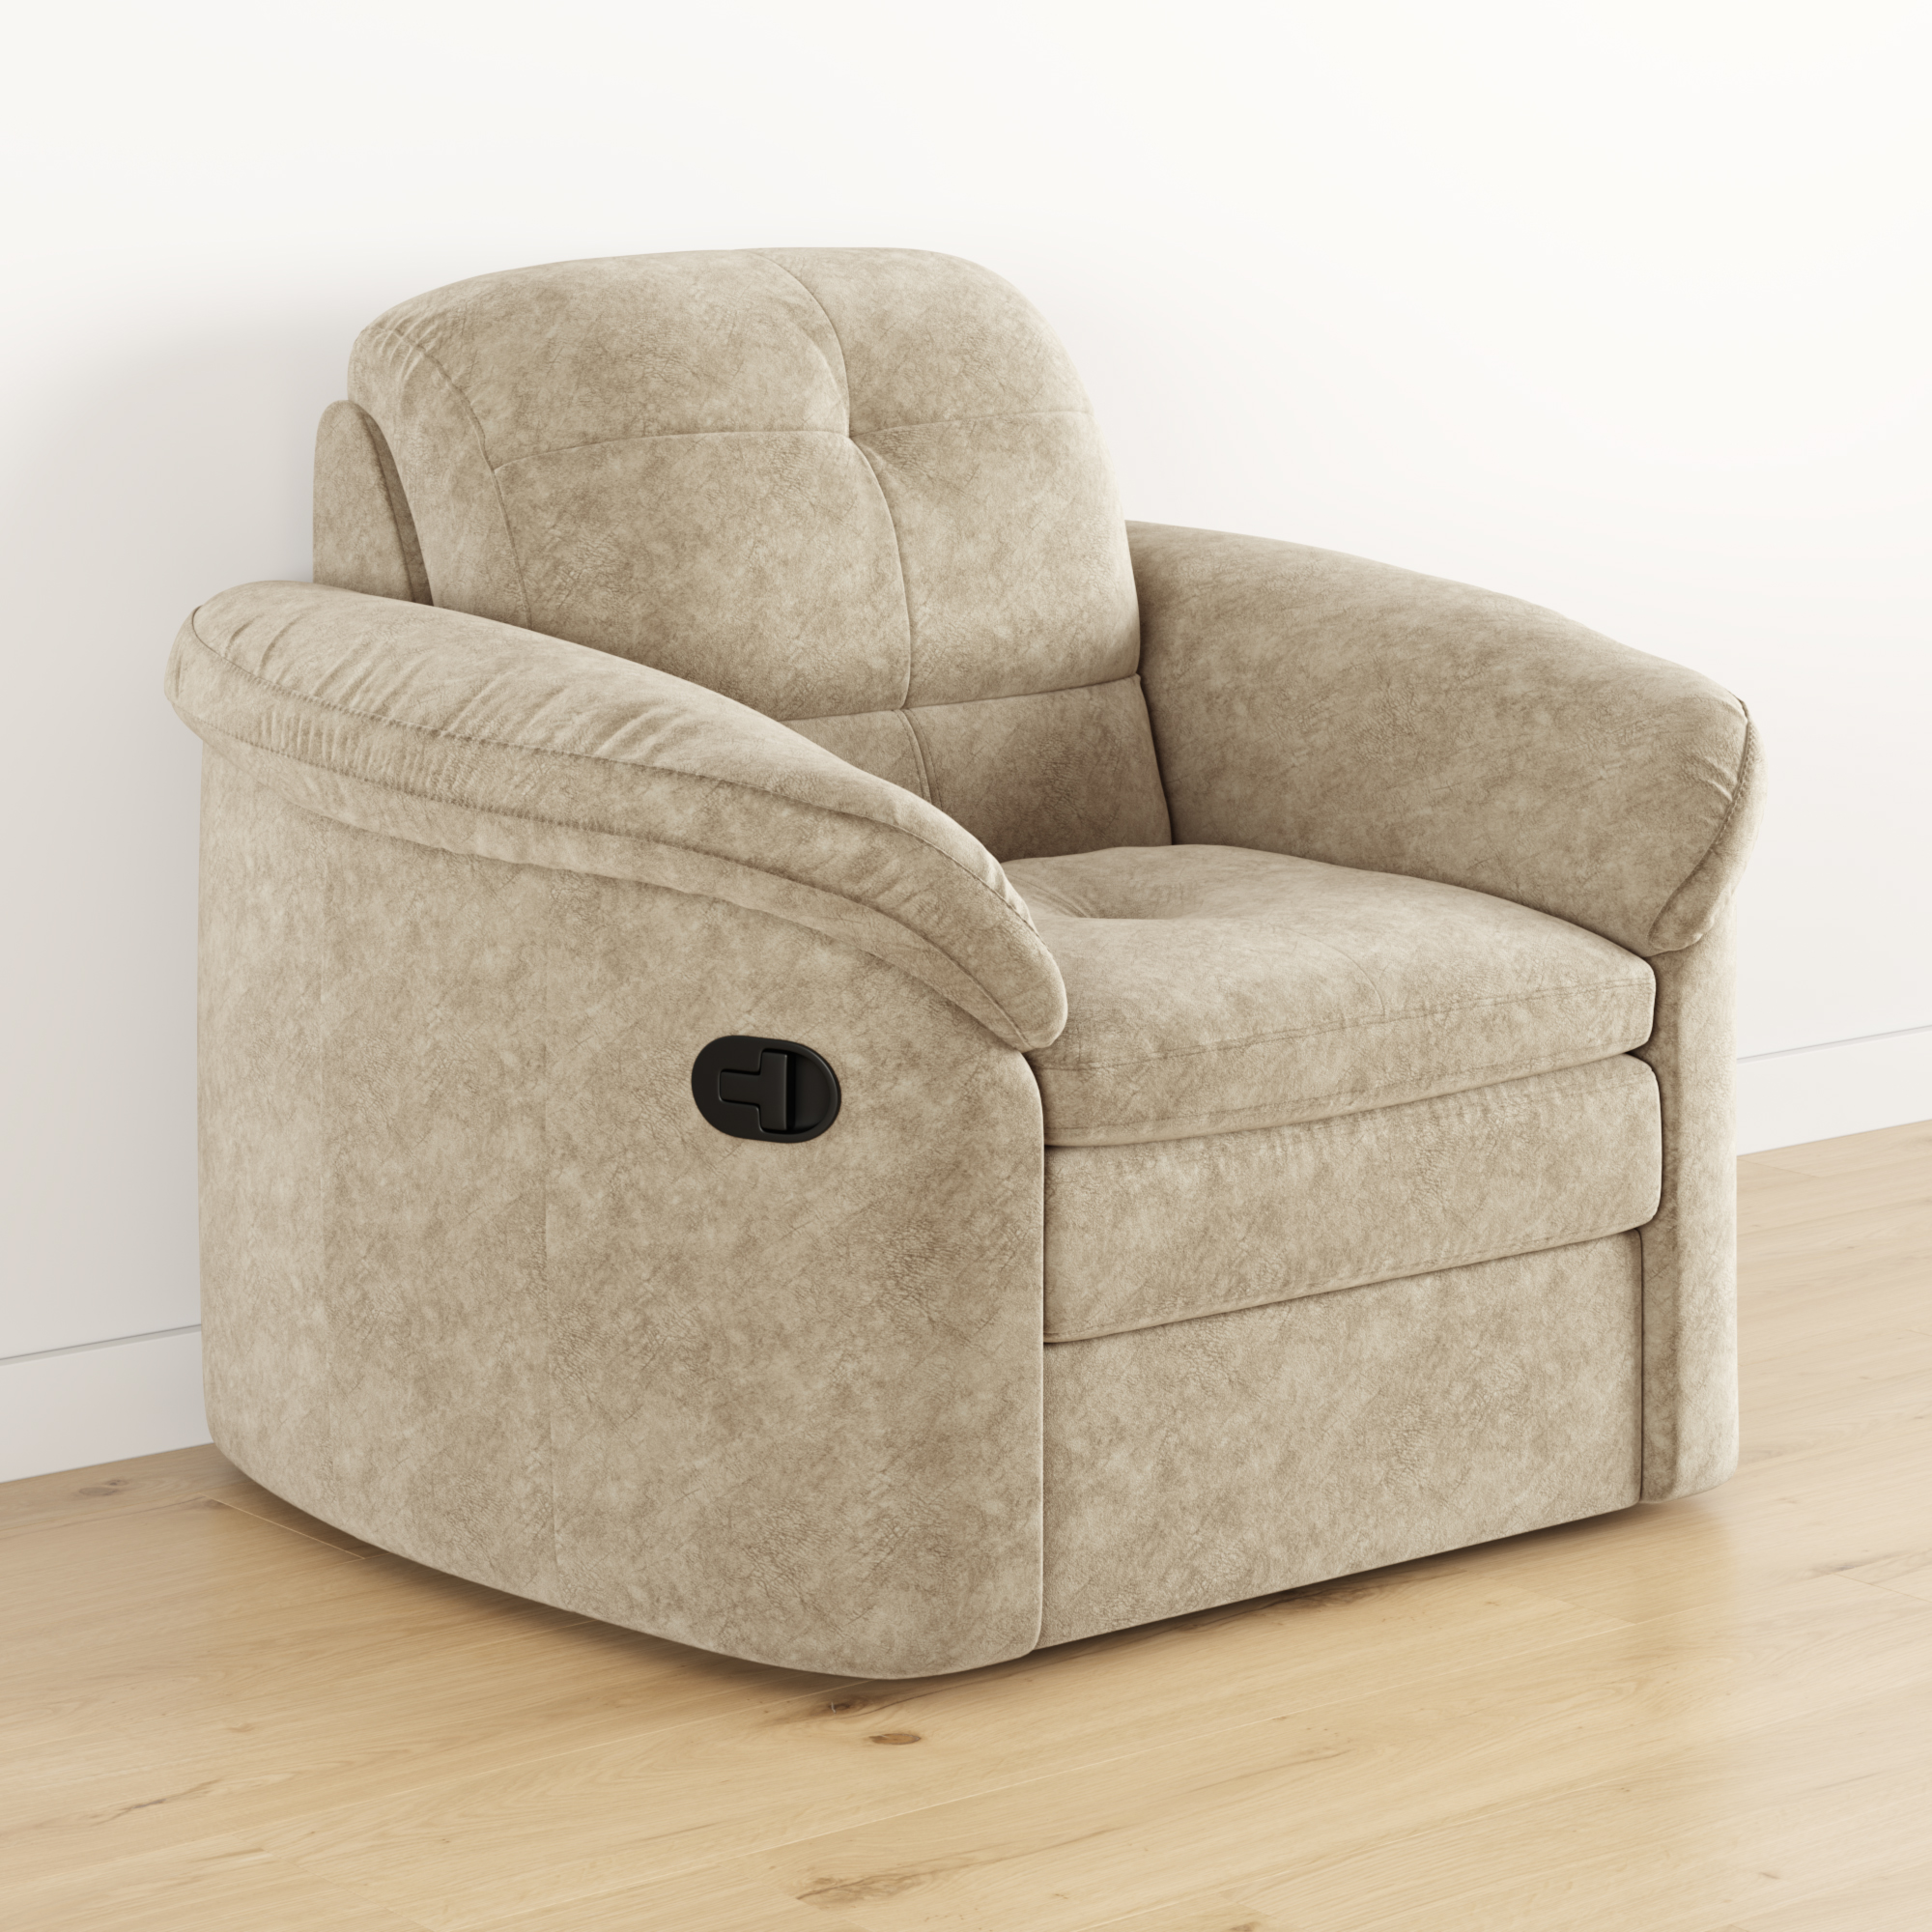 Lazurit Мягкое кресло глайдер Коннери кресло качалка глайдер мебель импэкс модель 68 серый ясень ткань verona cyklam